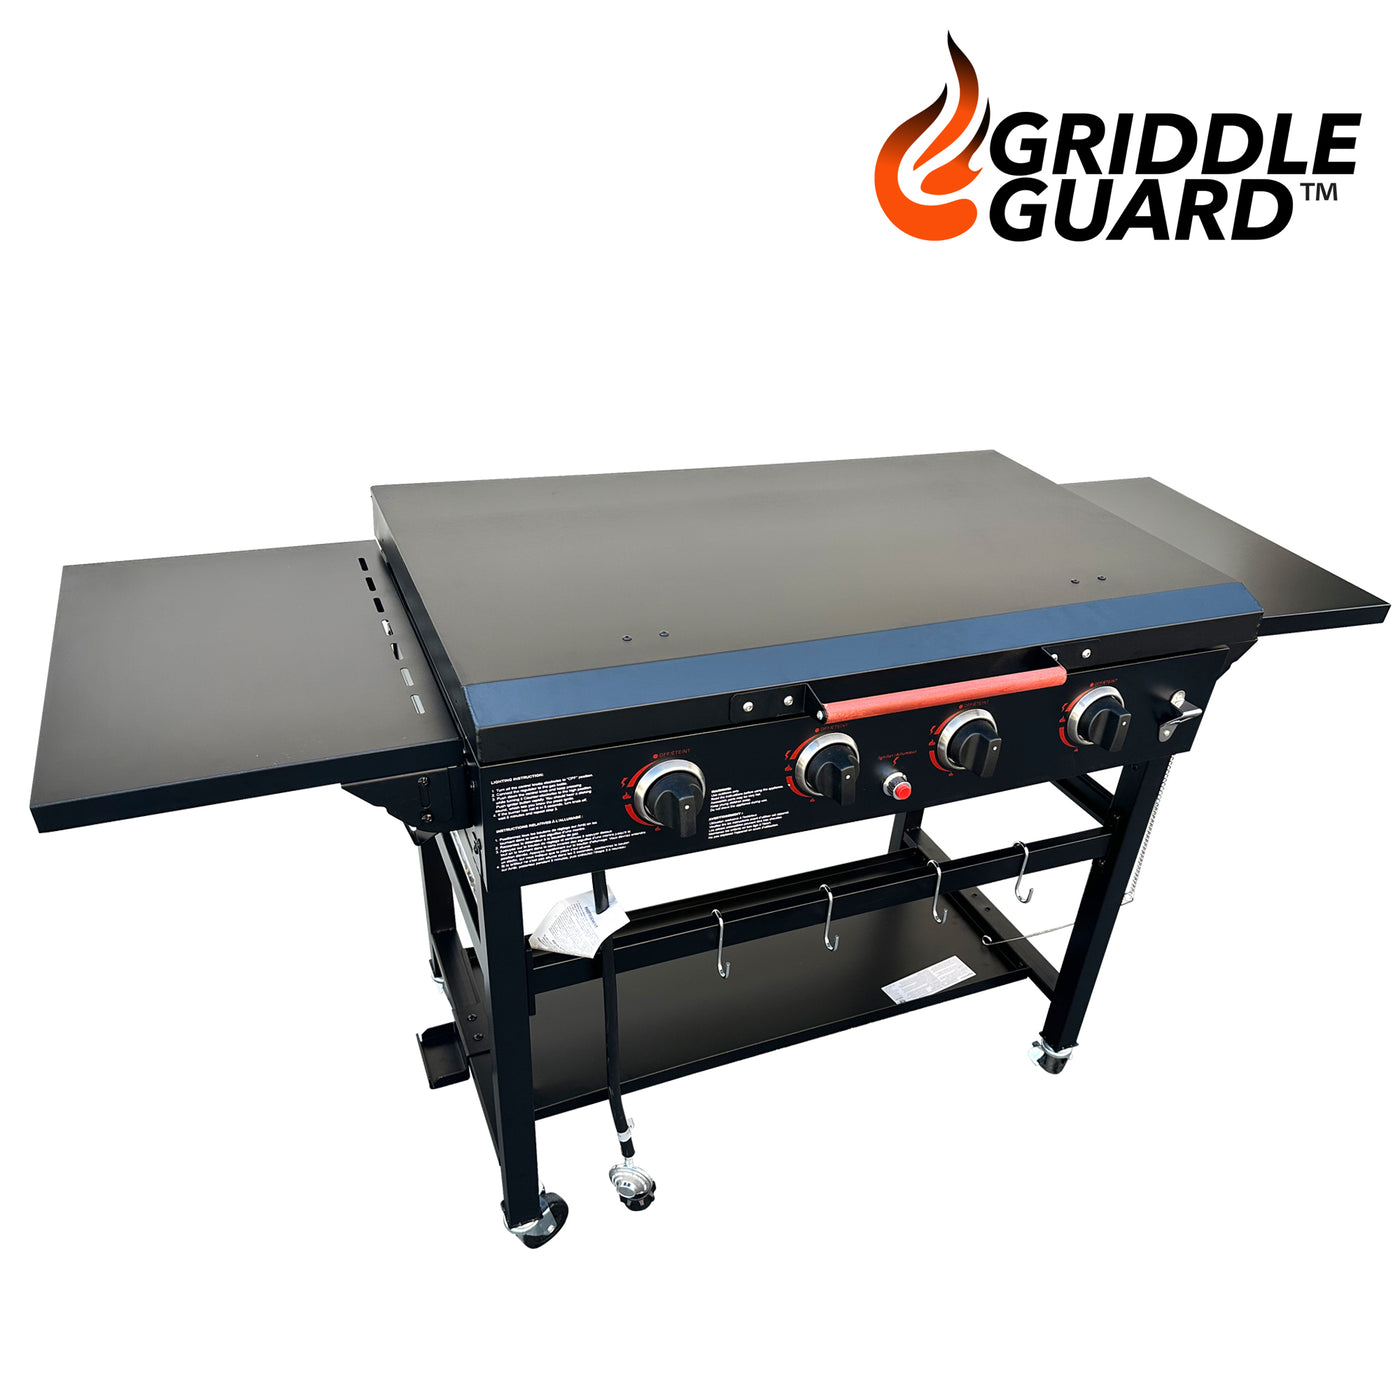 GriddleGuard Hard Cover Lid for Amazon Basics 36" Griddle 4-Burner